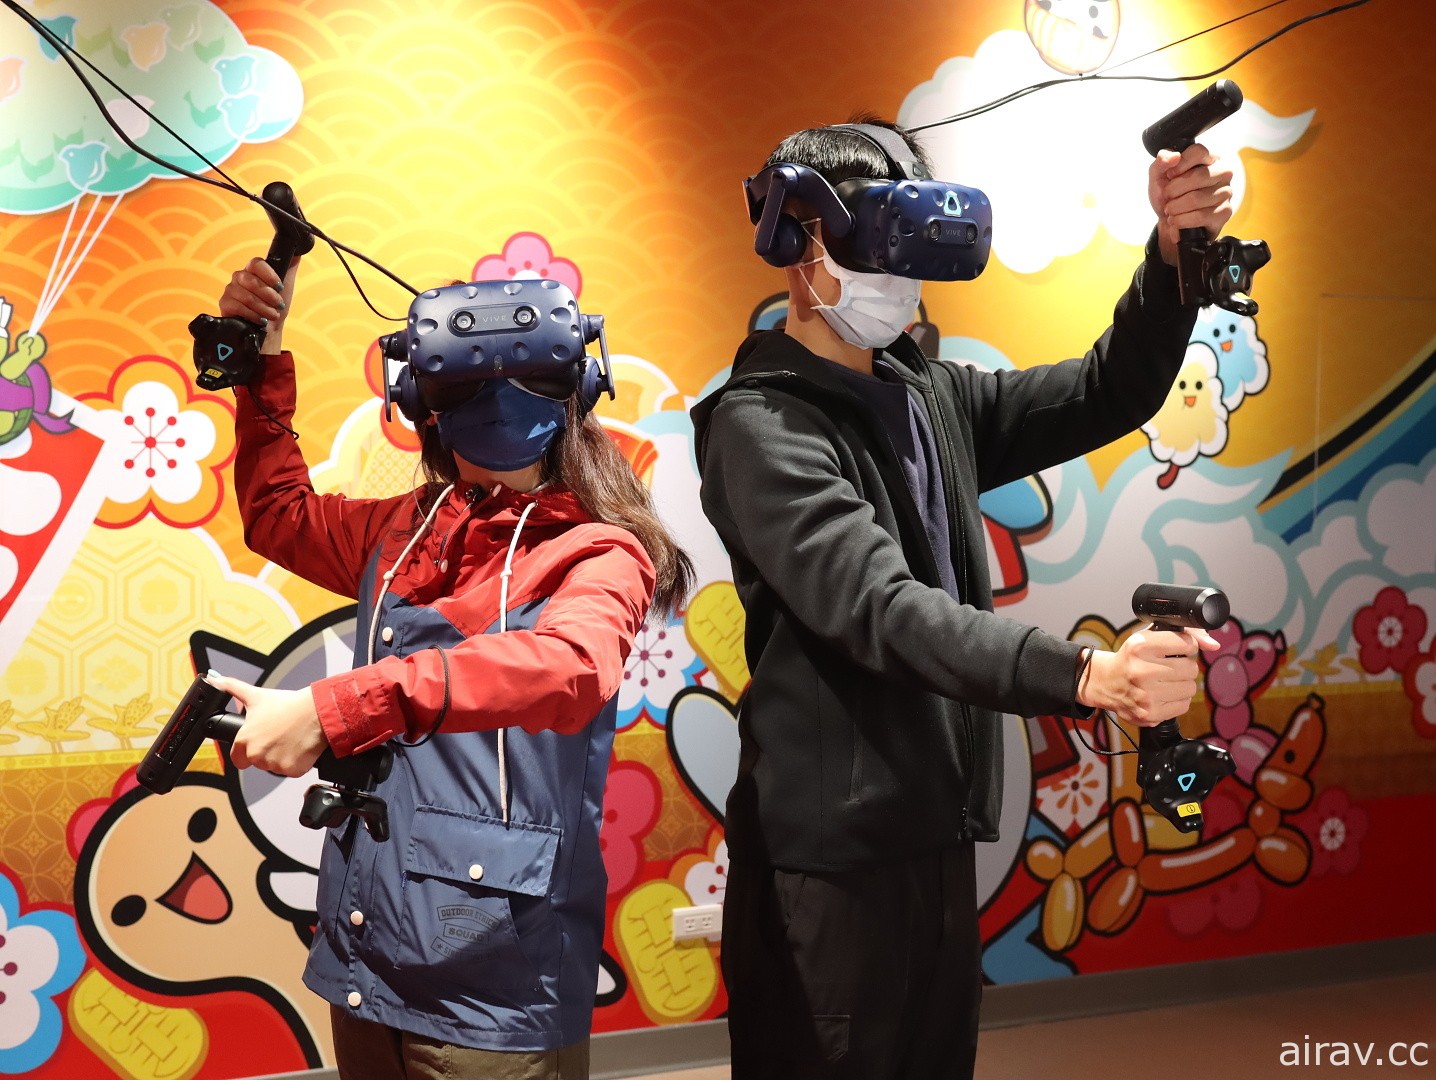 宏匯廣場 VR Zone 海外獨家引進《太鼓之達人 VR》體感開打